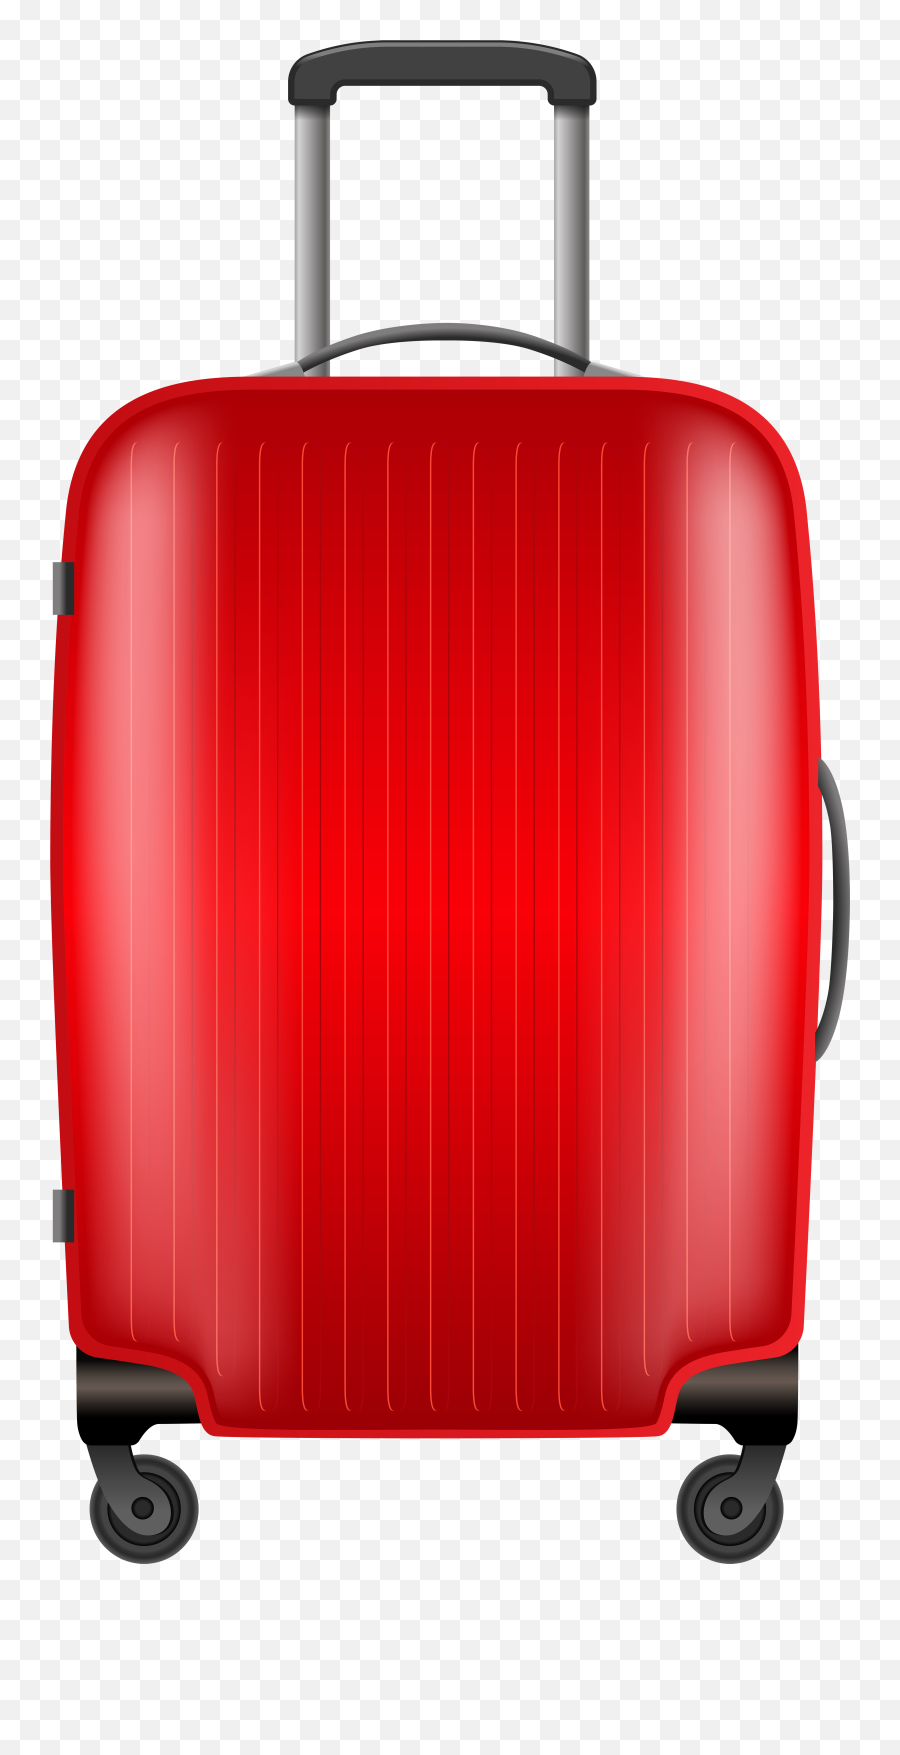 Travel Bag Png U0026 Free Travel Bagpng Transparent Images - Travelling Bag Clip Art Emoji,Rodney The Ram Emojis